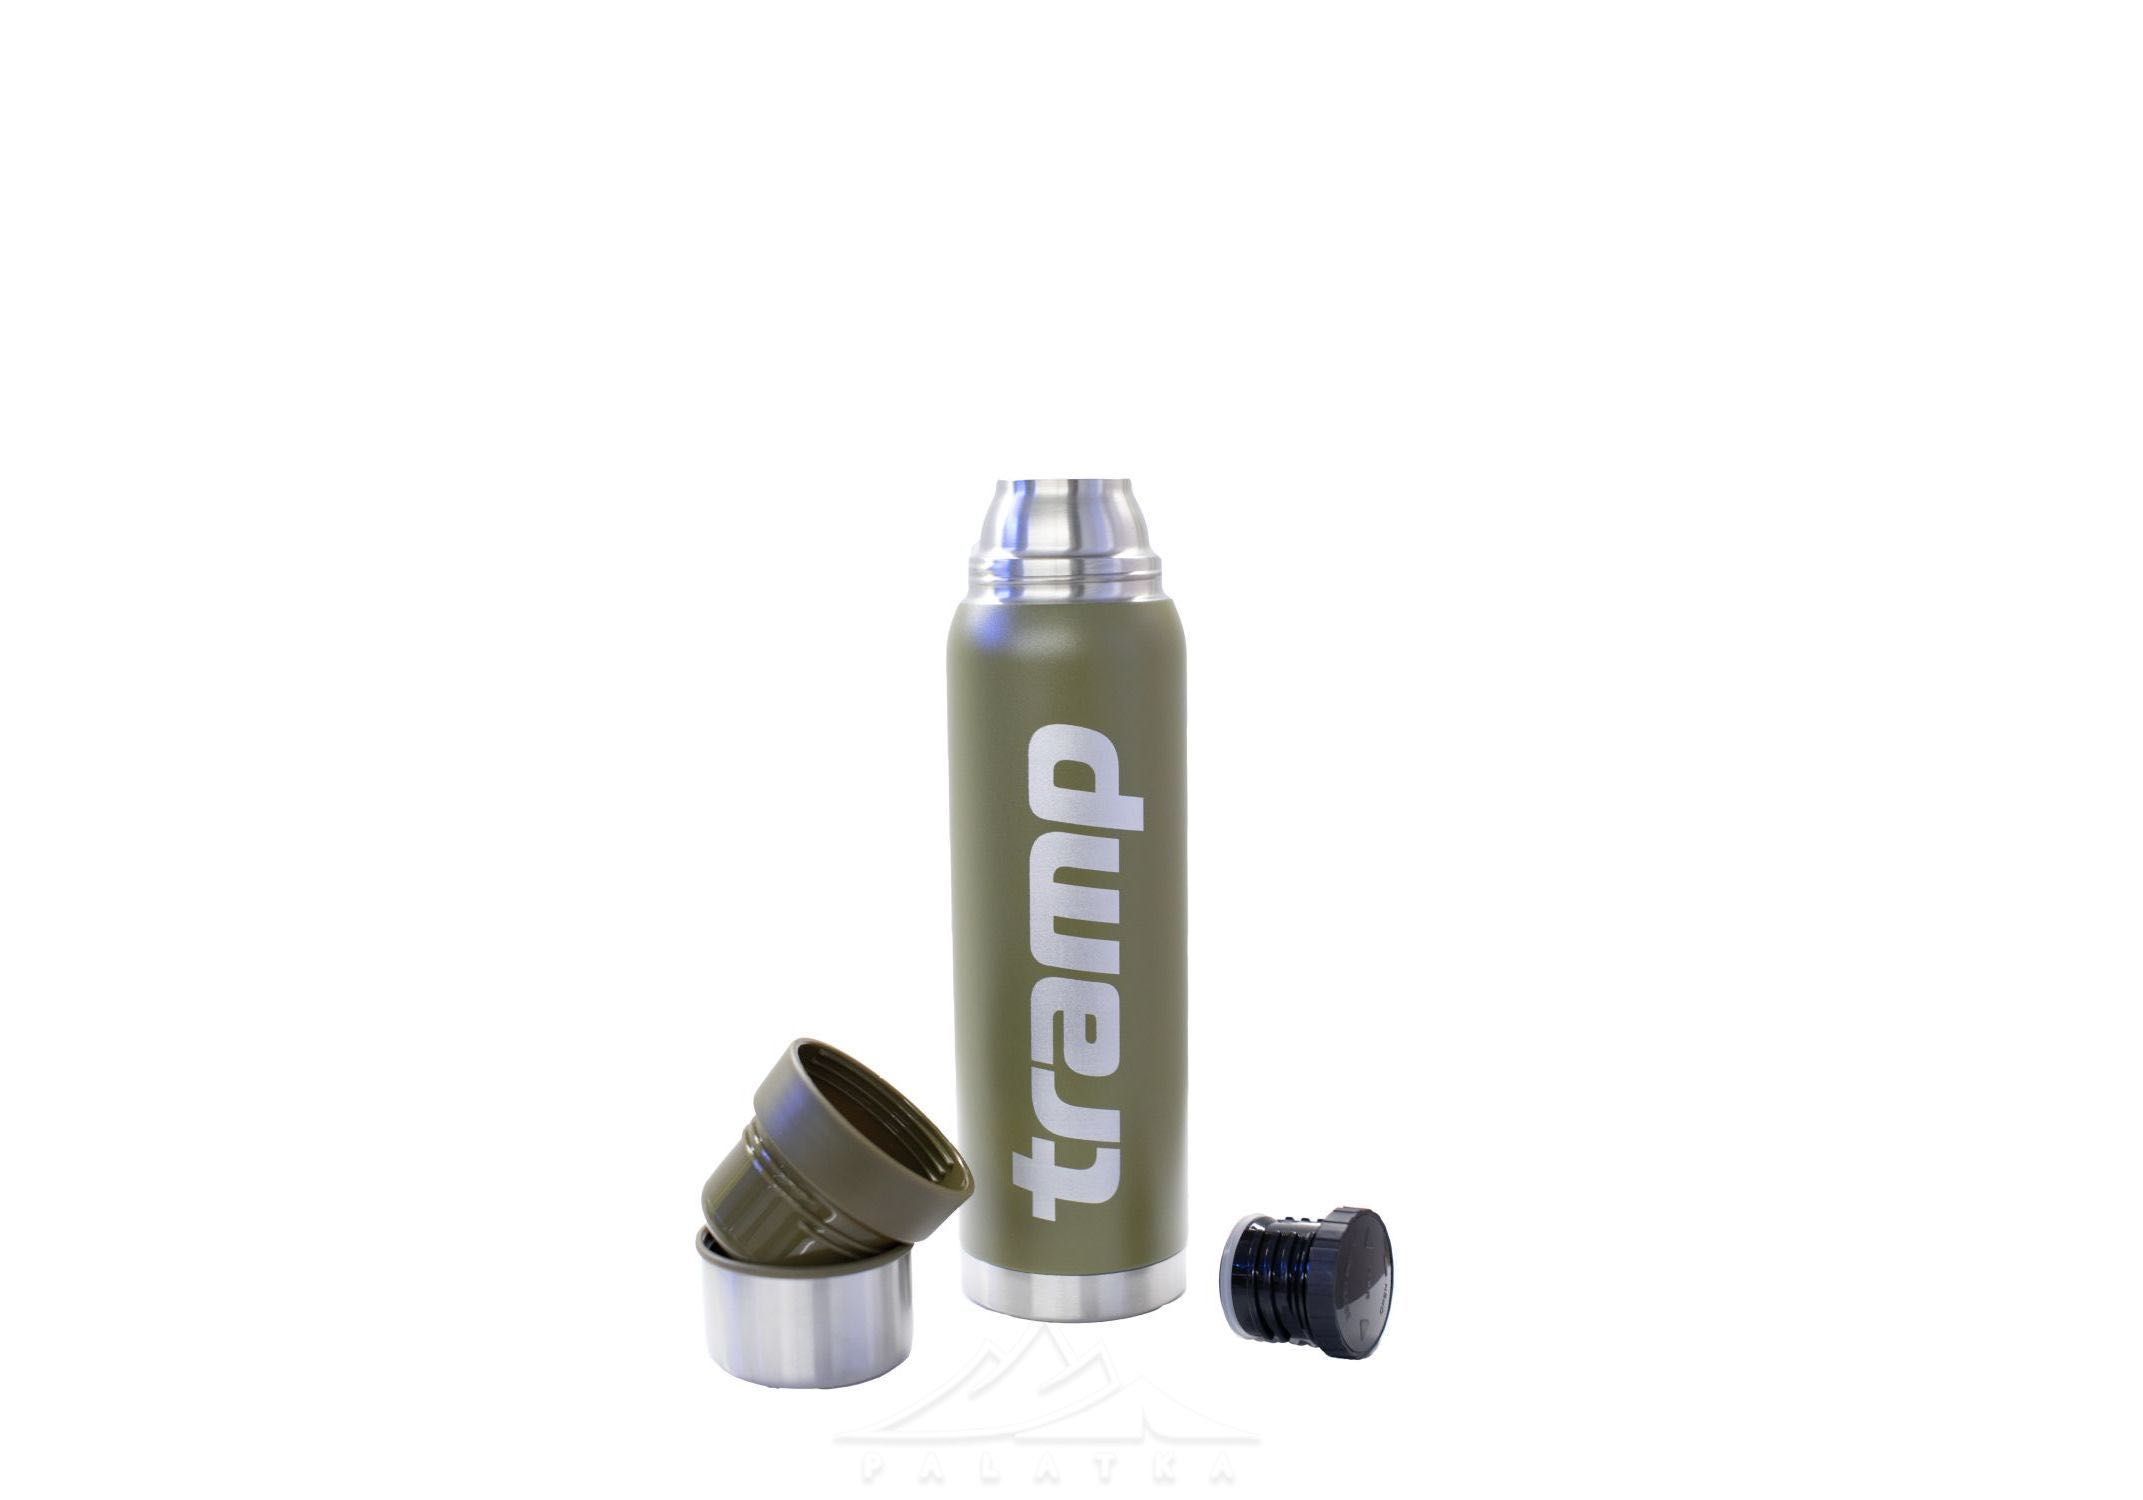 Термос Tramp 1.2 литра - TRC-028 оливковый экспедиционной серии